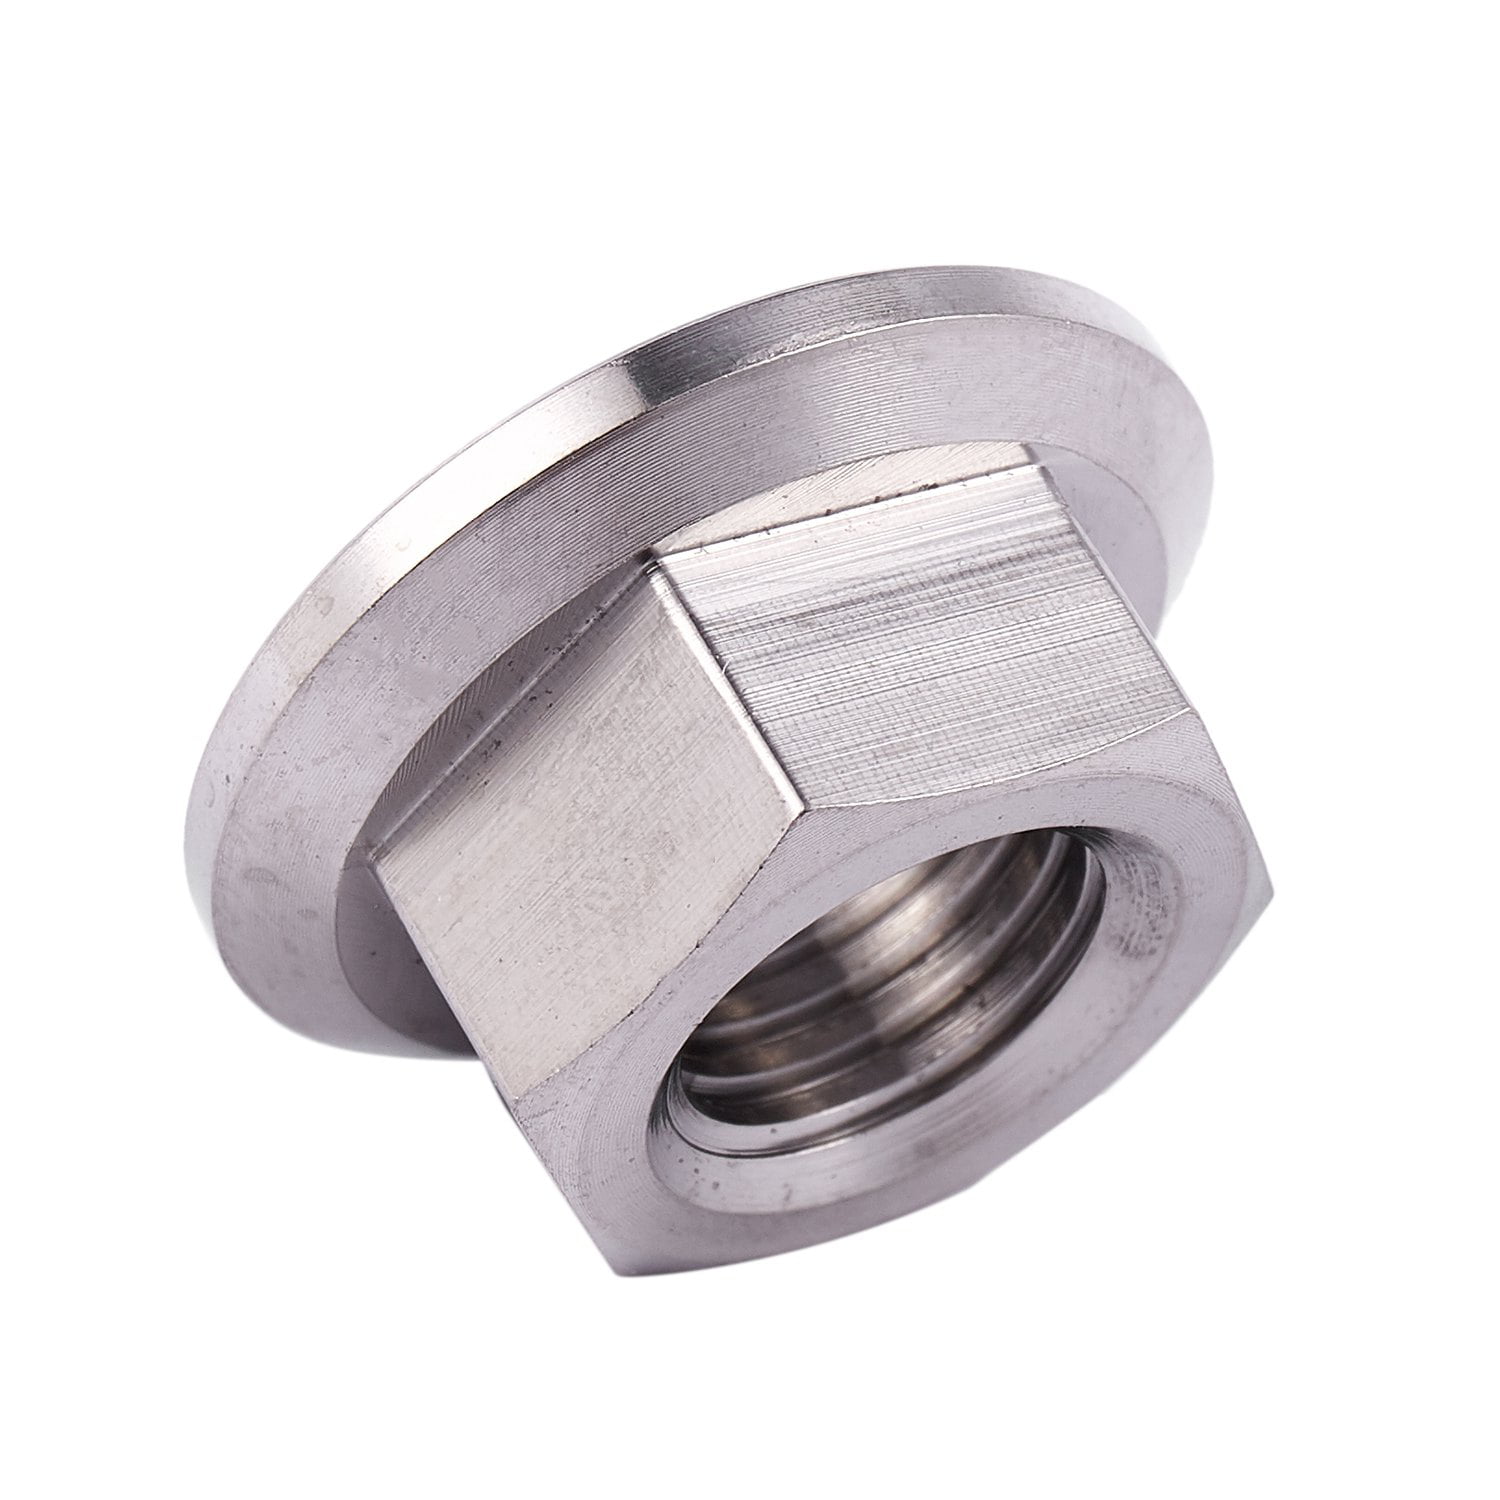 M10 x 1.25 mm TC4 titanium Ti flanged nut for screws SCREW-fastener I2H9 5X 